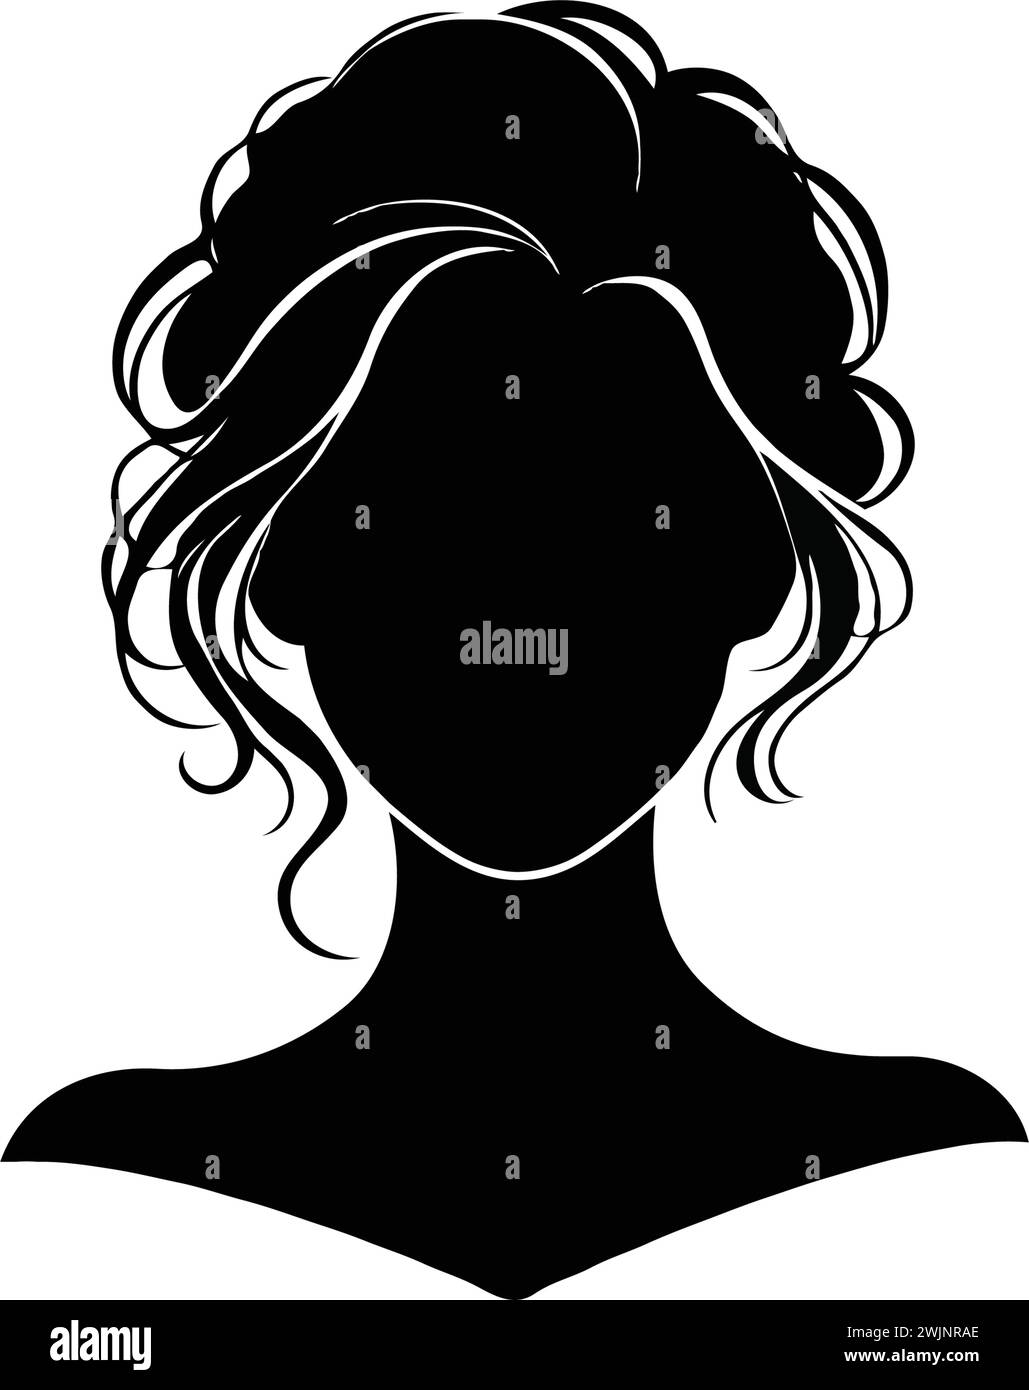 Vektor-Illustration der Frisur einer Frau. Silhouette. Stock Vektor